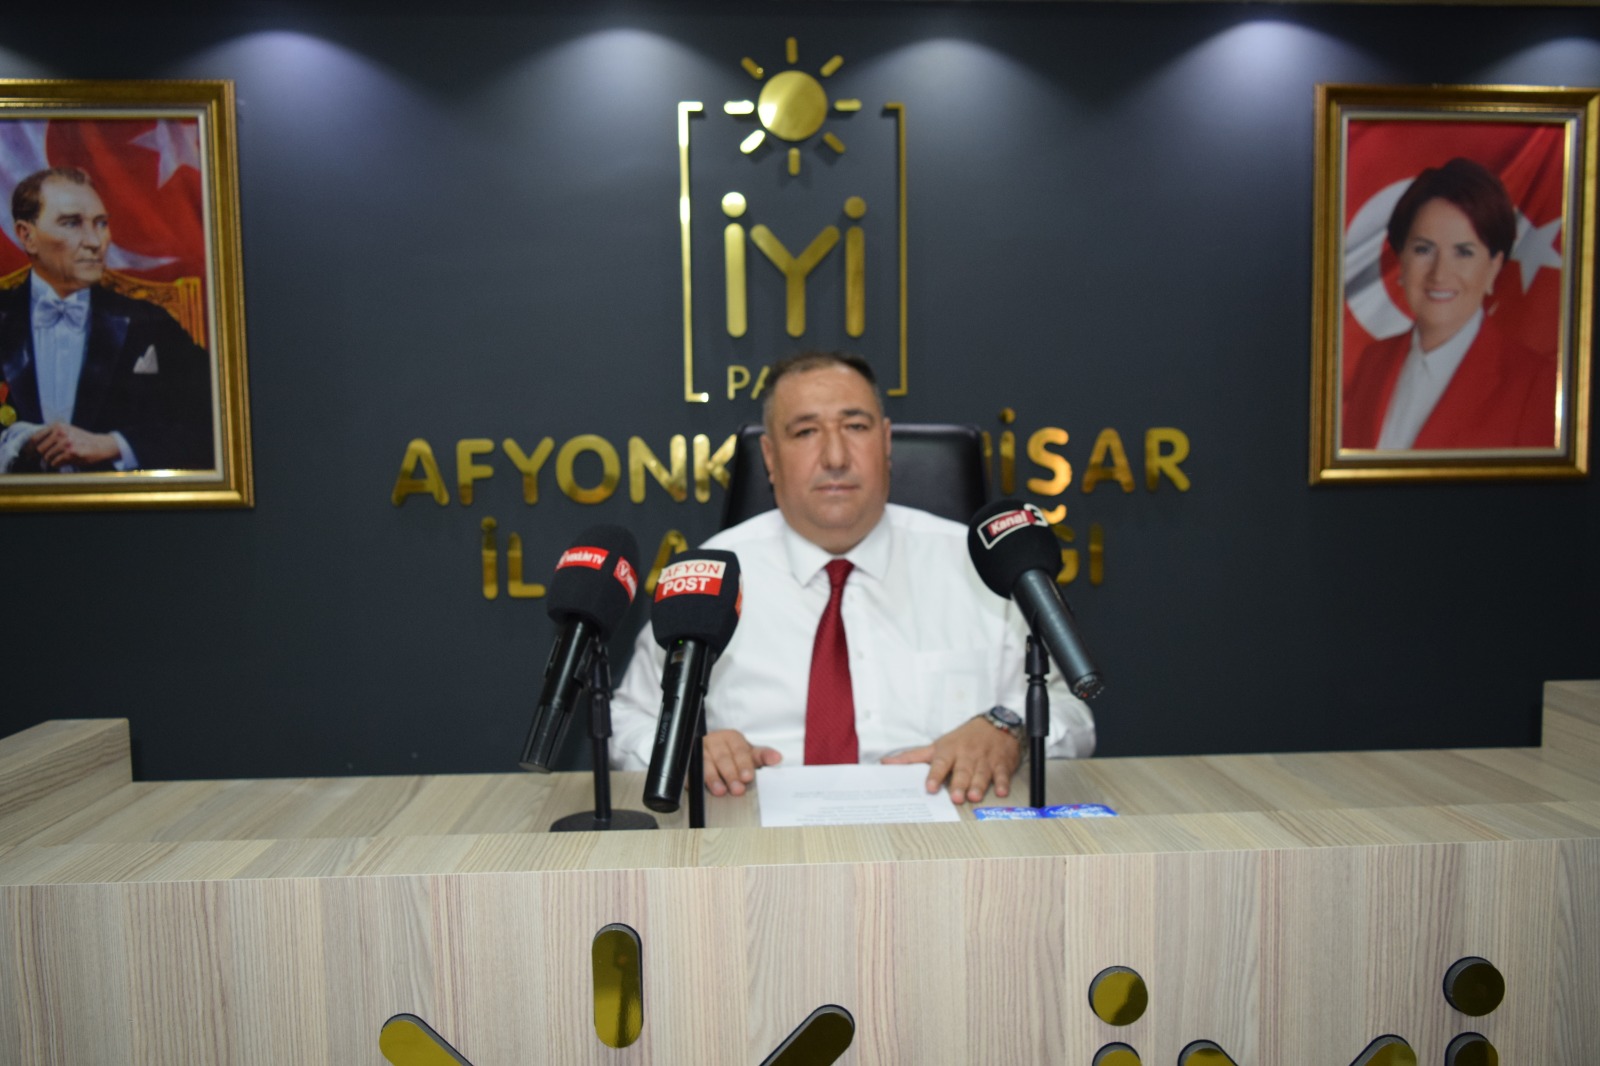 İYİ Parti Afyonkarahisar İl Başkanı Muhammet Mısıroğlu'nun basın toplantısı